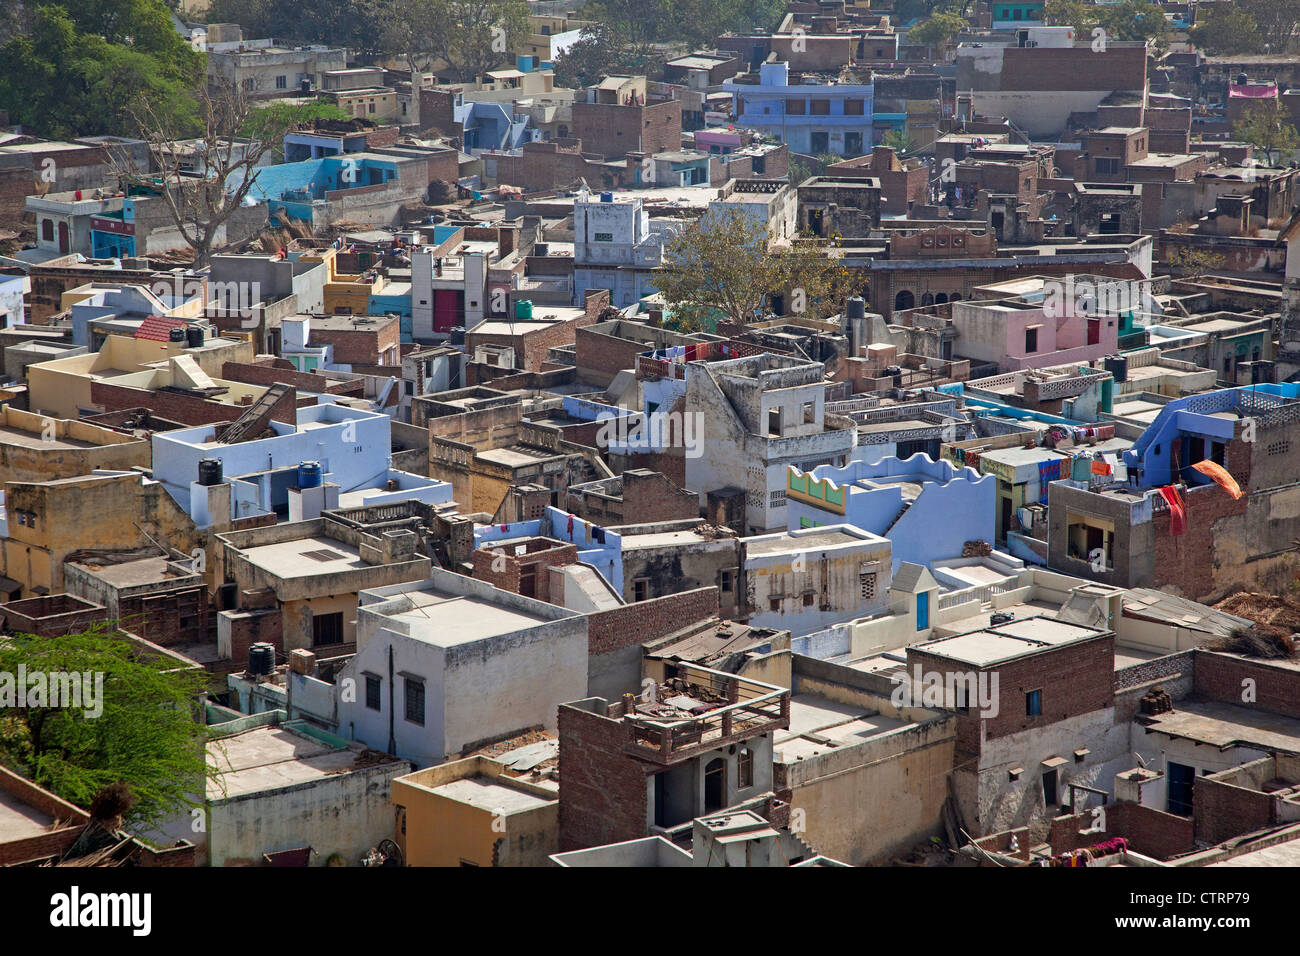 View over houses of the village Barsana / Varsana, Uttar Pradesh, India Stock Photo